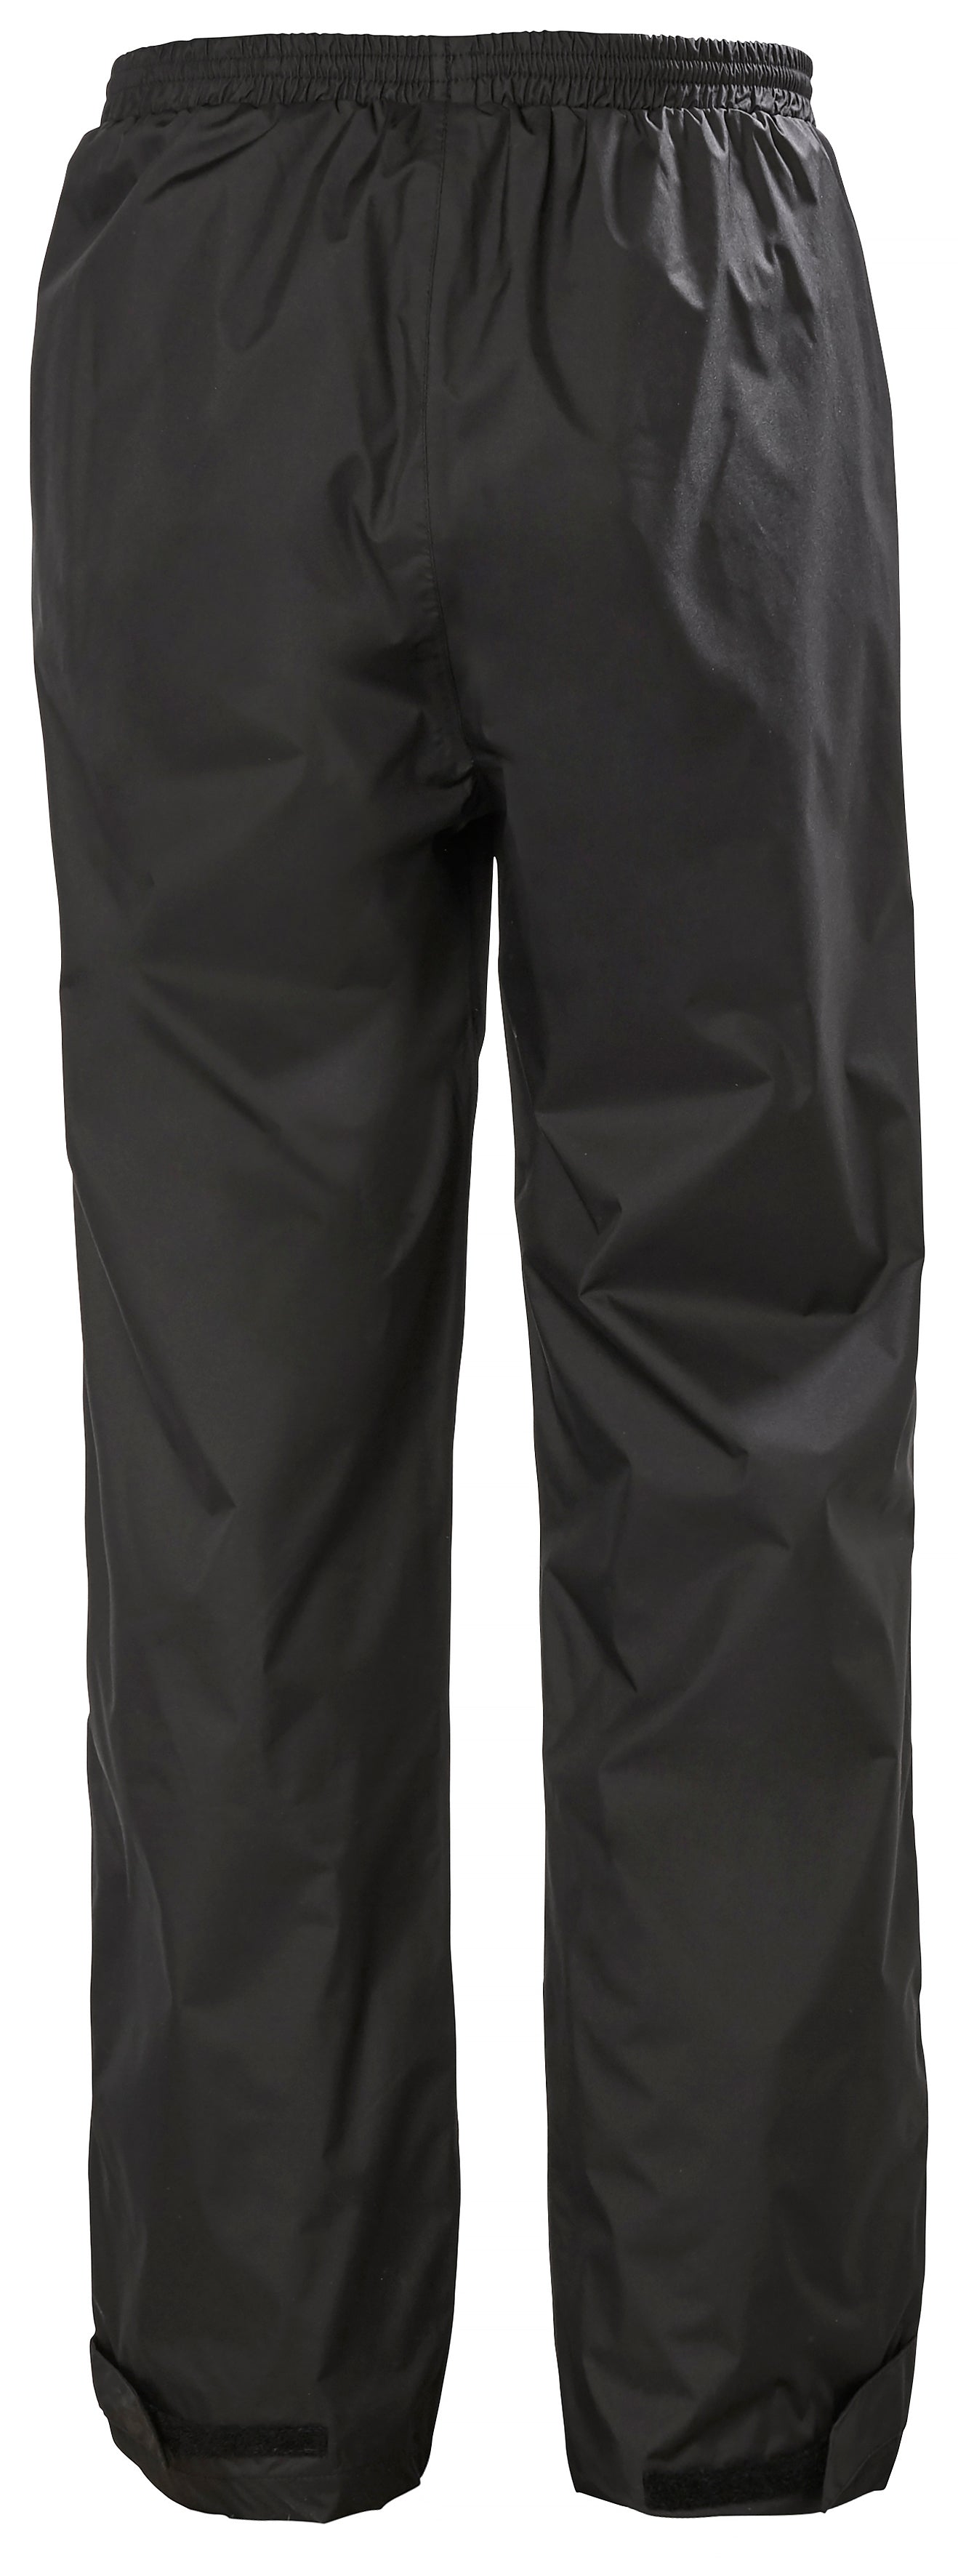 Helly Hansen Men's Manchester Rain Pant - Work World - Workwear, Work Boots, Safety Gear